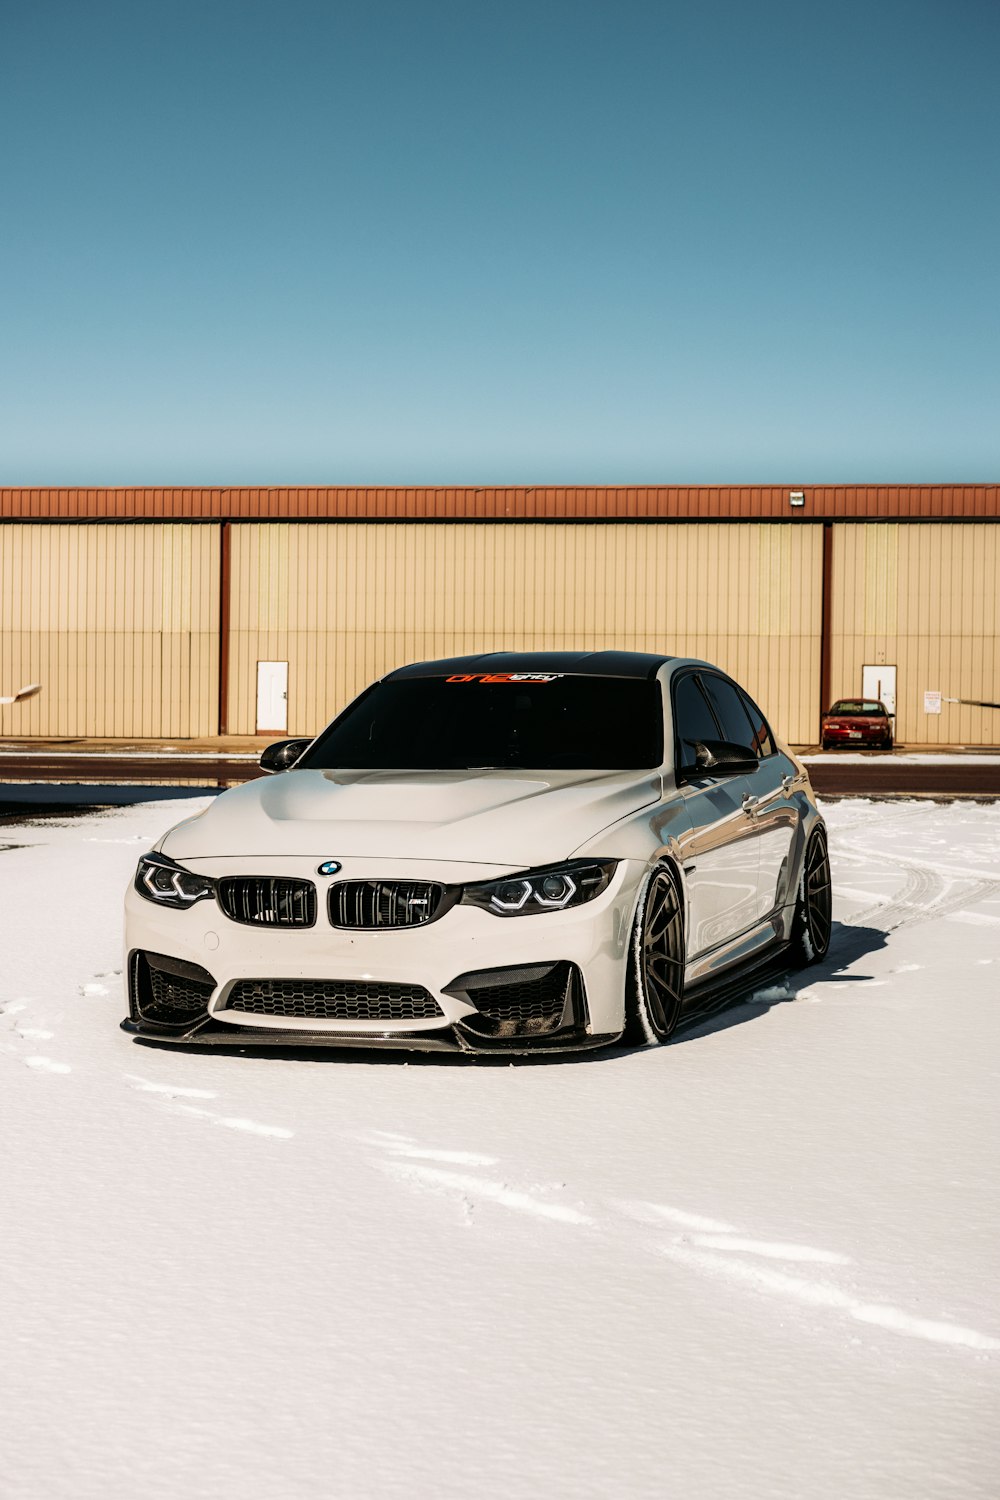 Weißes BMW M 3 Coupé tagsüber auf schneebedecktem Boden geparkt